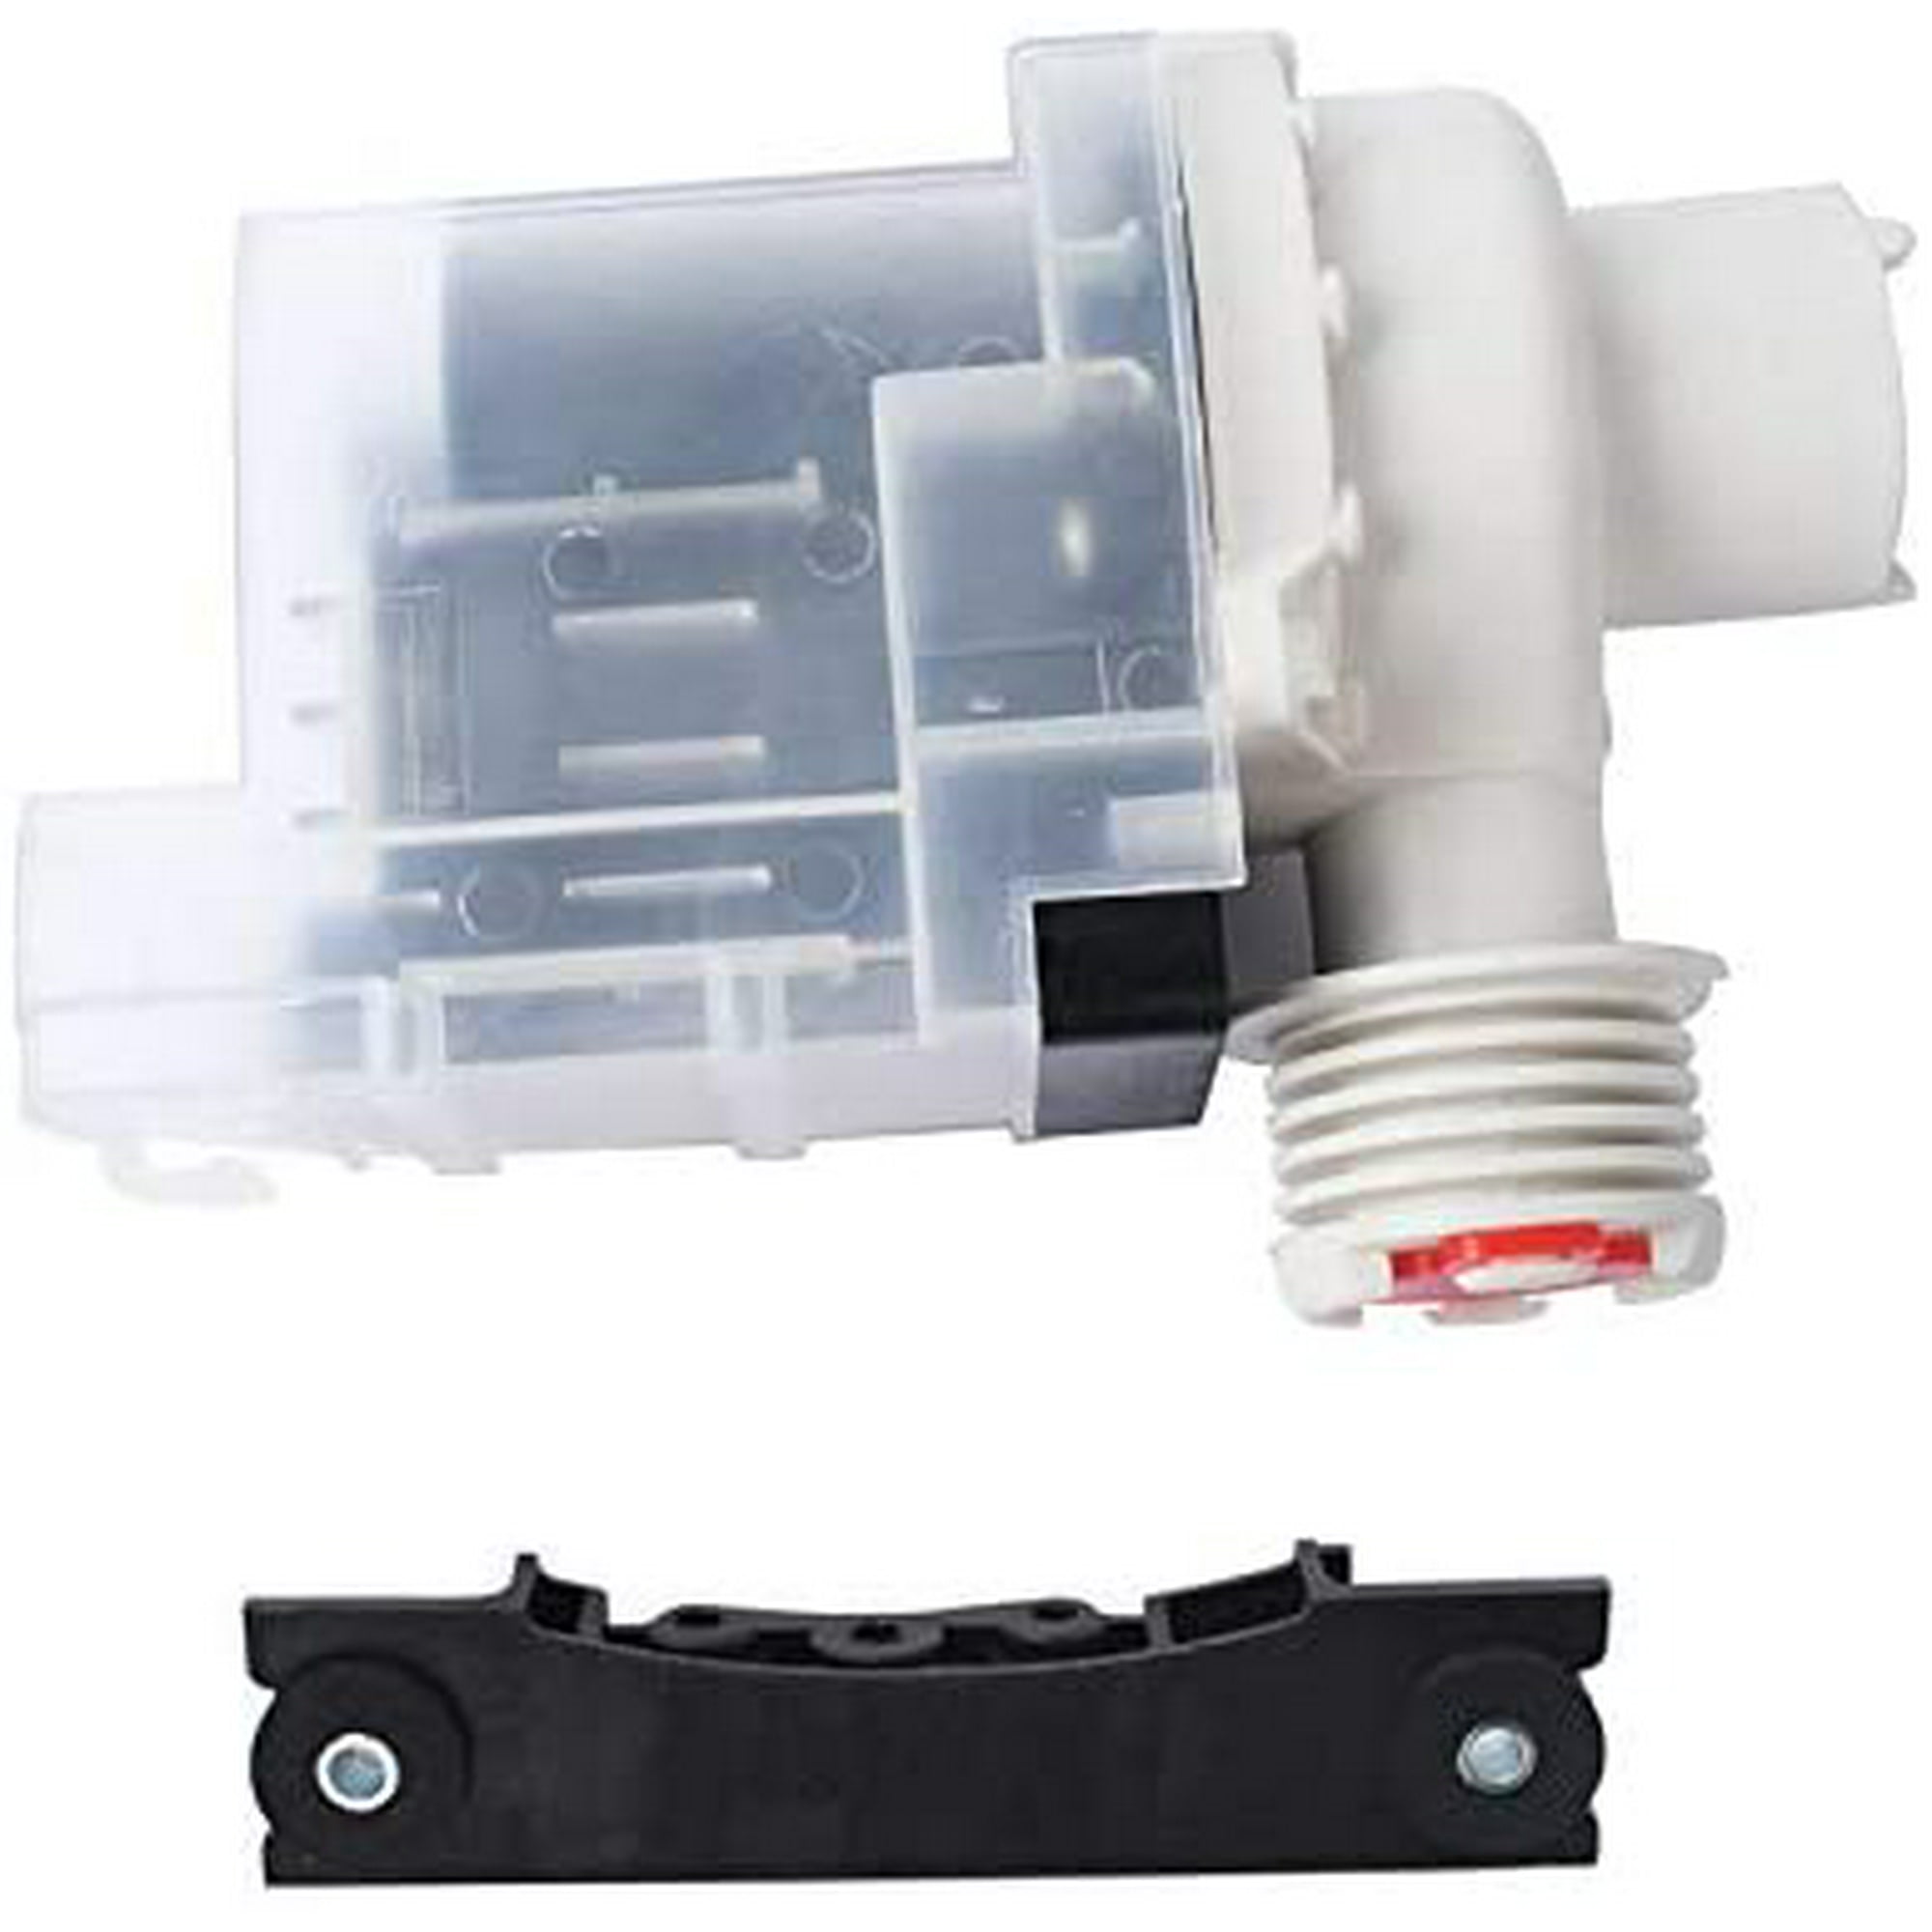 Replacement Drain Pump for Electrolux Frigidaire 137221600 137108100 134051200 LinkEZ Original Version 